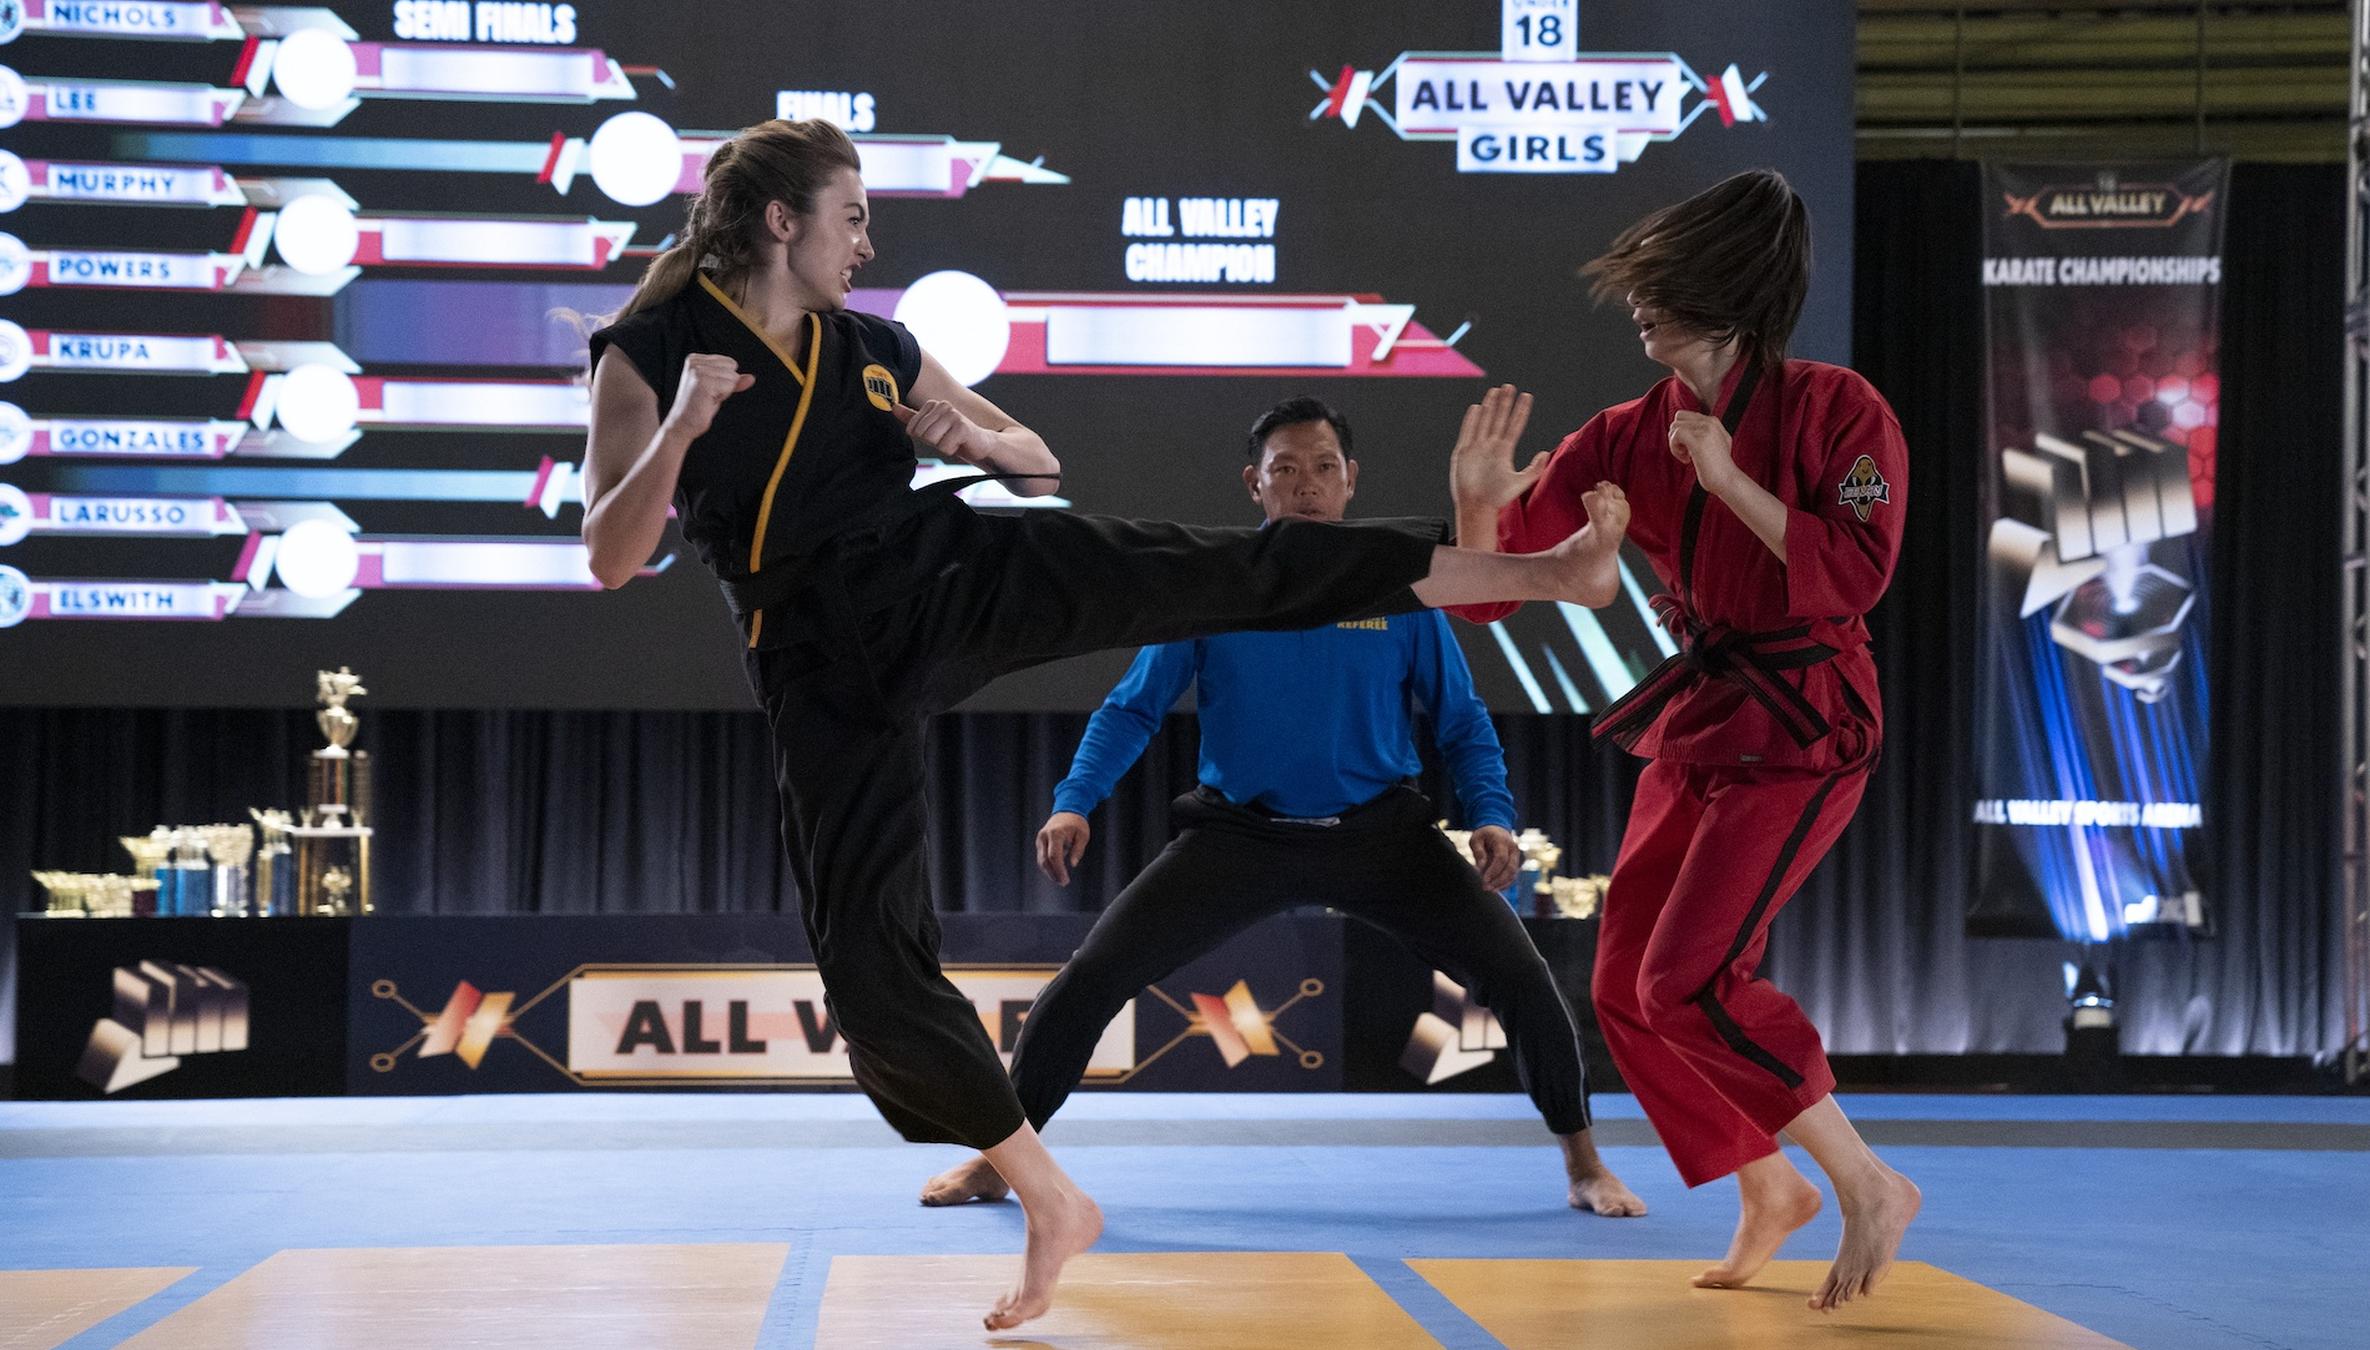 The “Karate Kid” Sequel “Cobra Kai” Will Transport Its Ideal